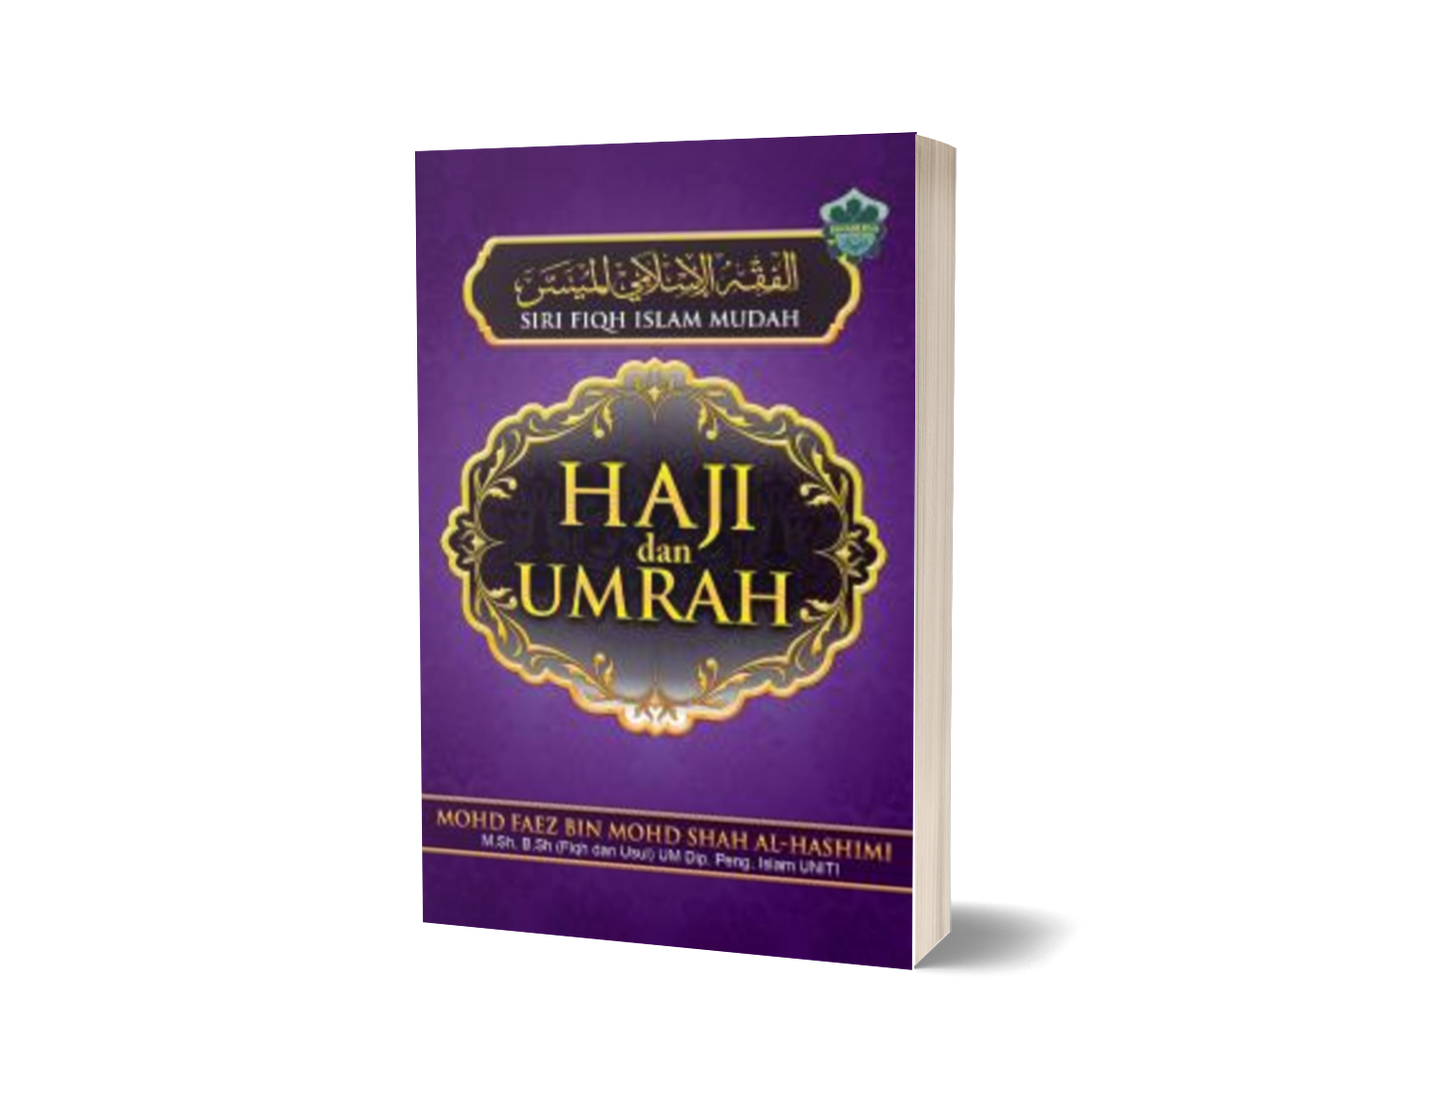 Siri Fiqh Islam Mudah - Haji dan Umrah